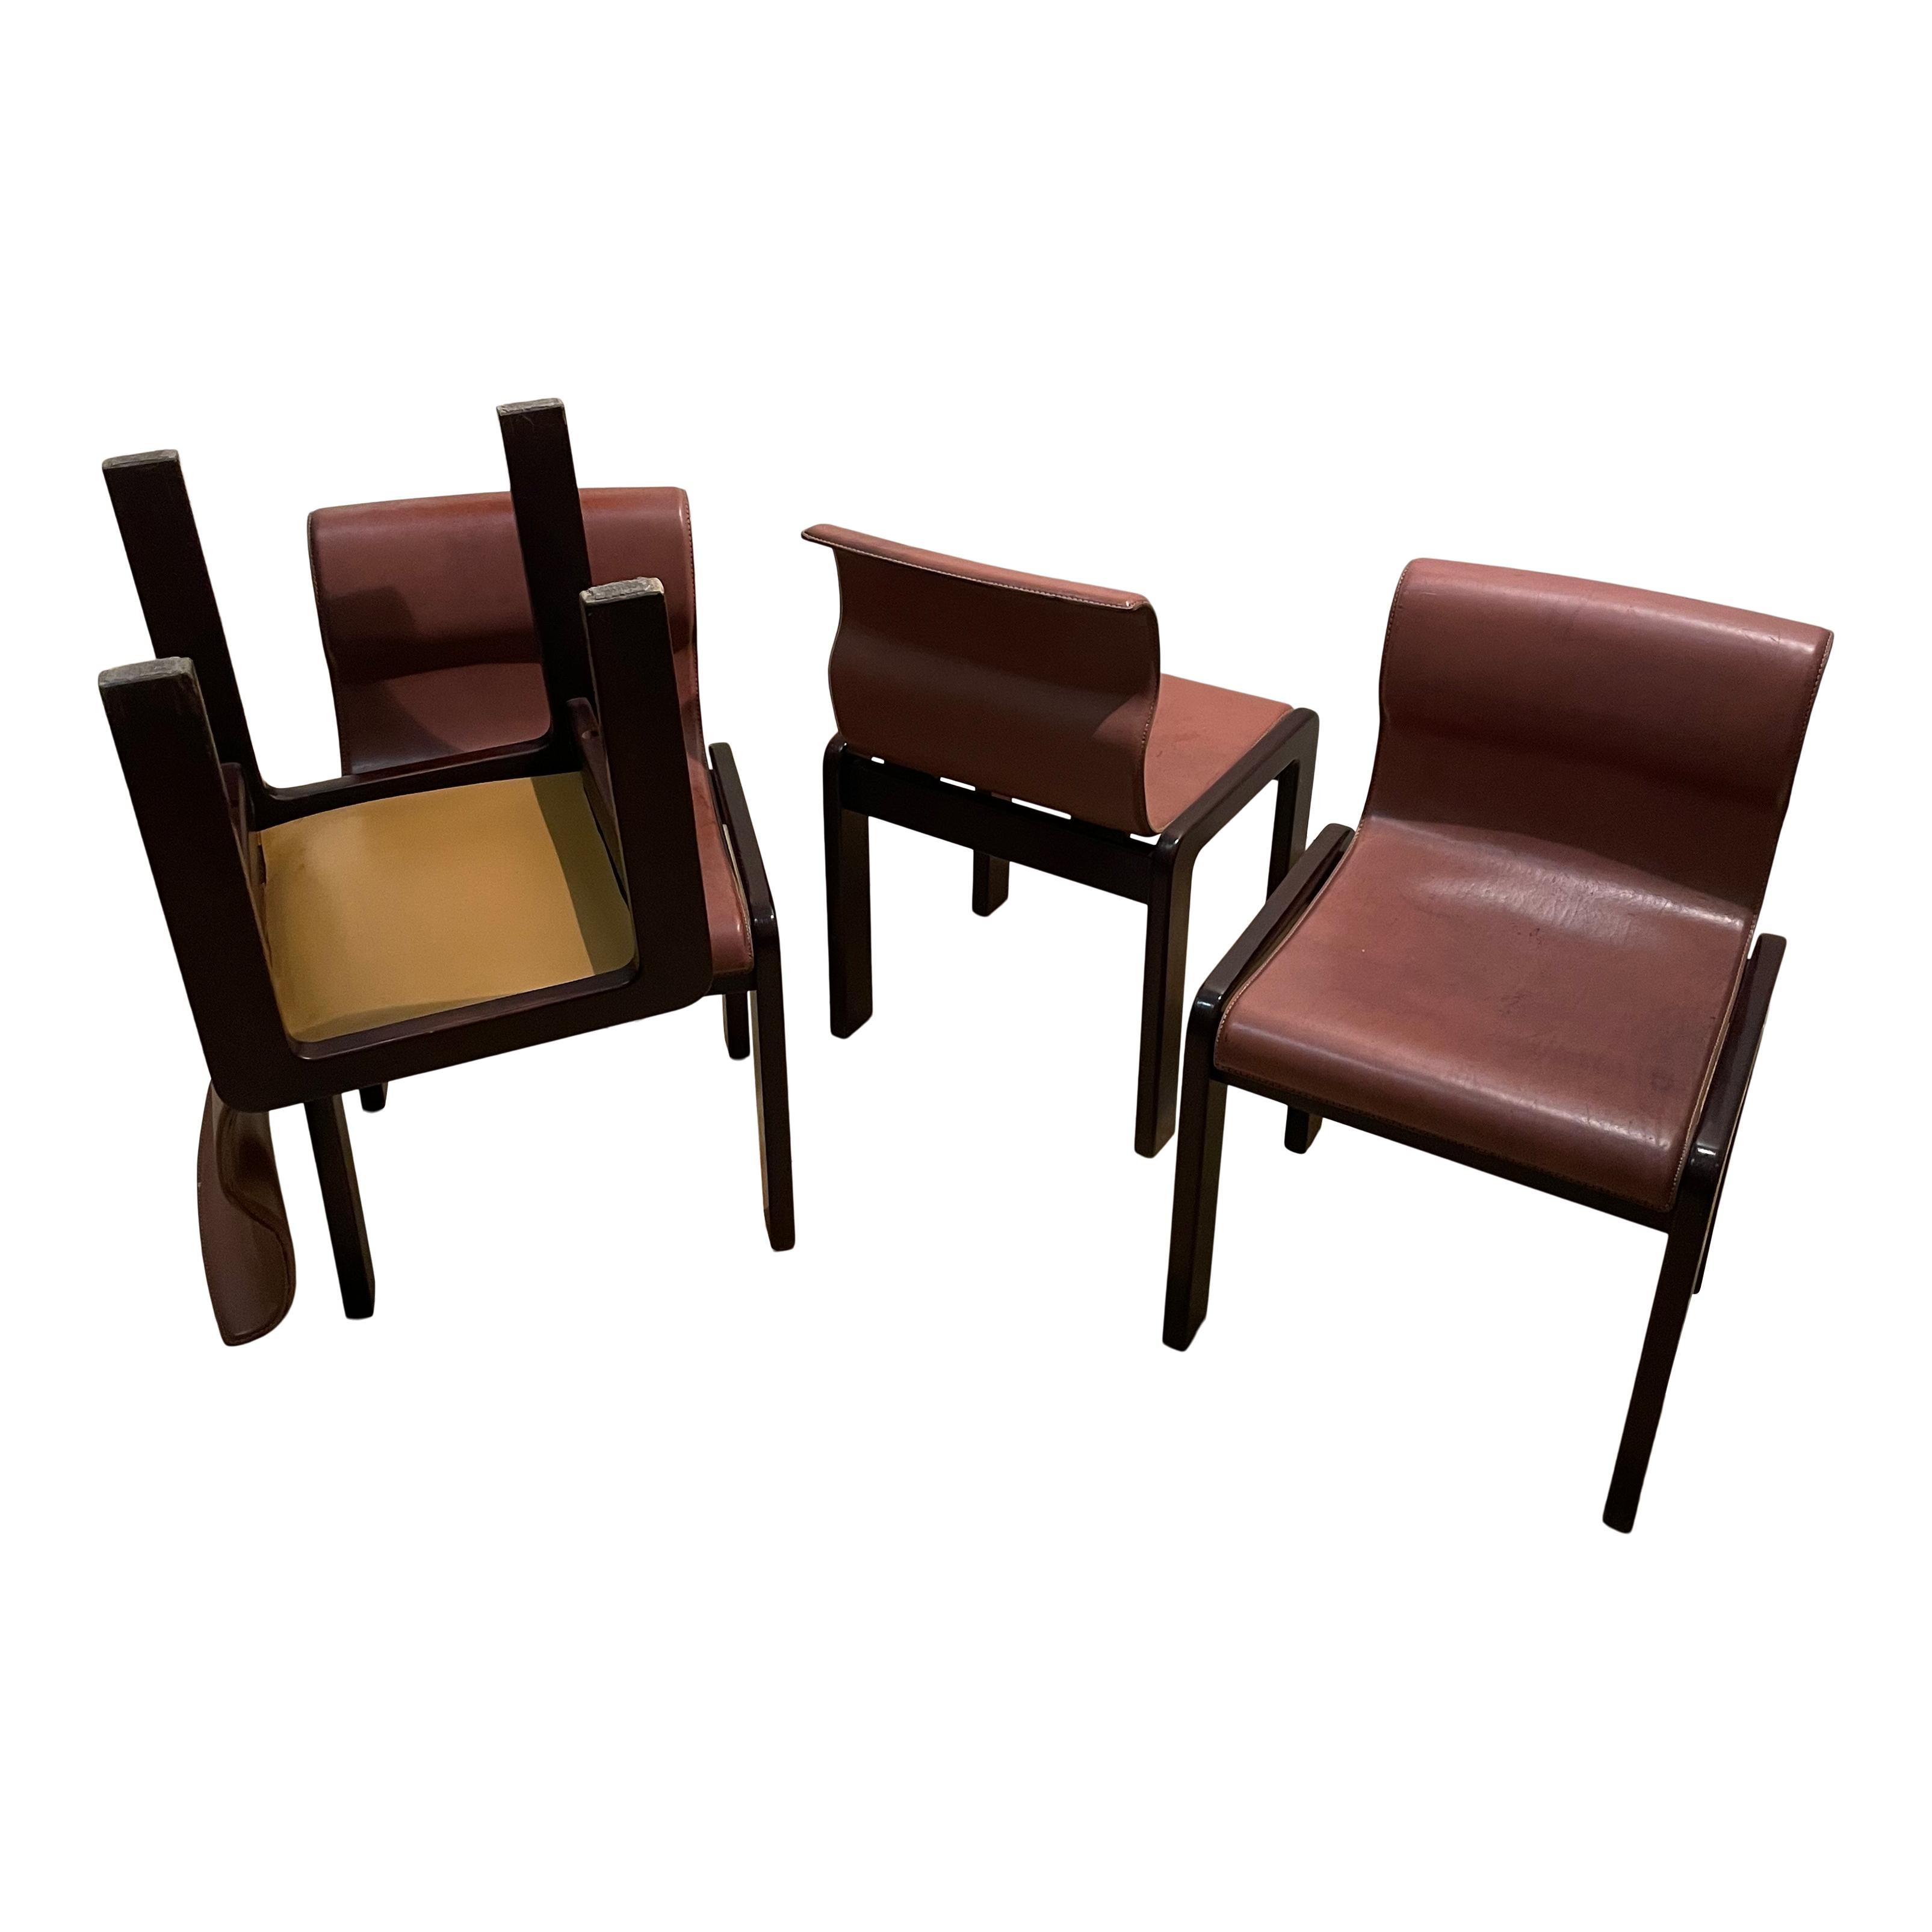 Ensemble de quatre chaises de salle à manger conçues par Afra & Tobia Scarpa à la fin des années 60. La forme présente des solutions que l'on peut retrouver dans d'autres projets Scarpa. Les pieds, en noyer, avec leur structure à double tréteaux,